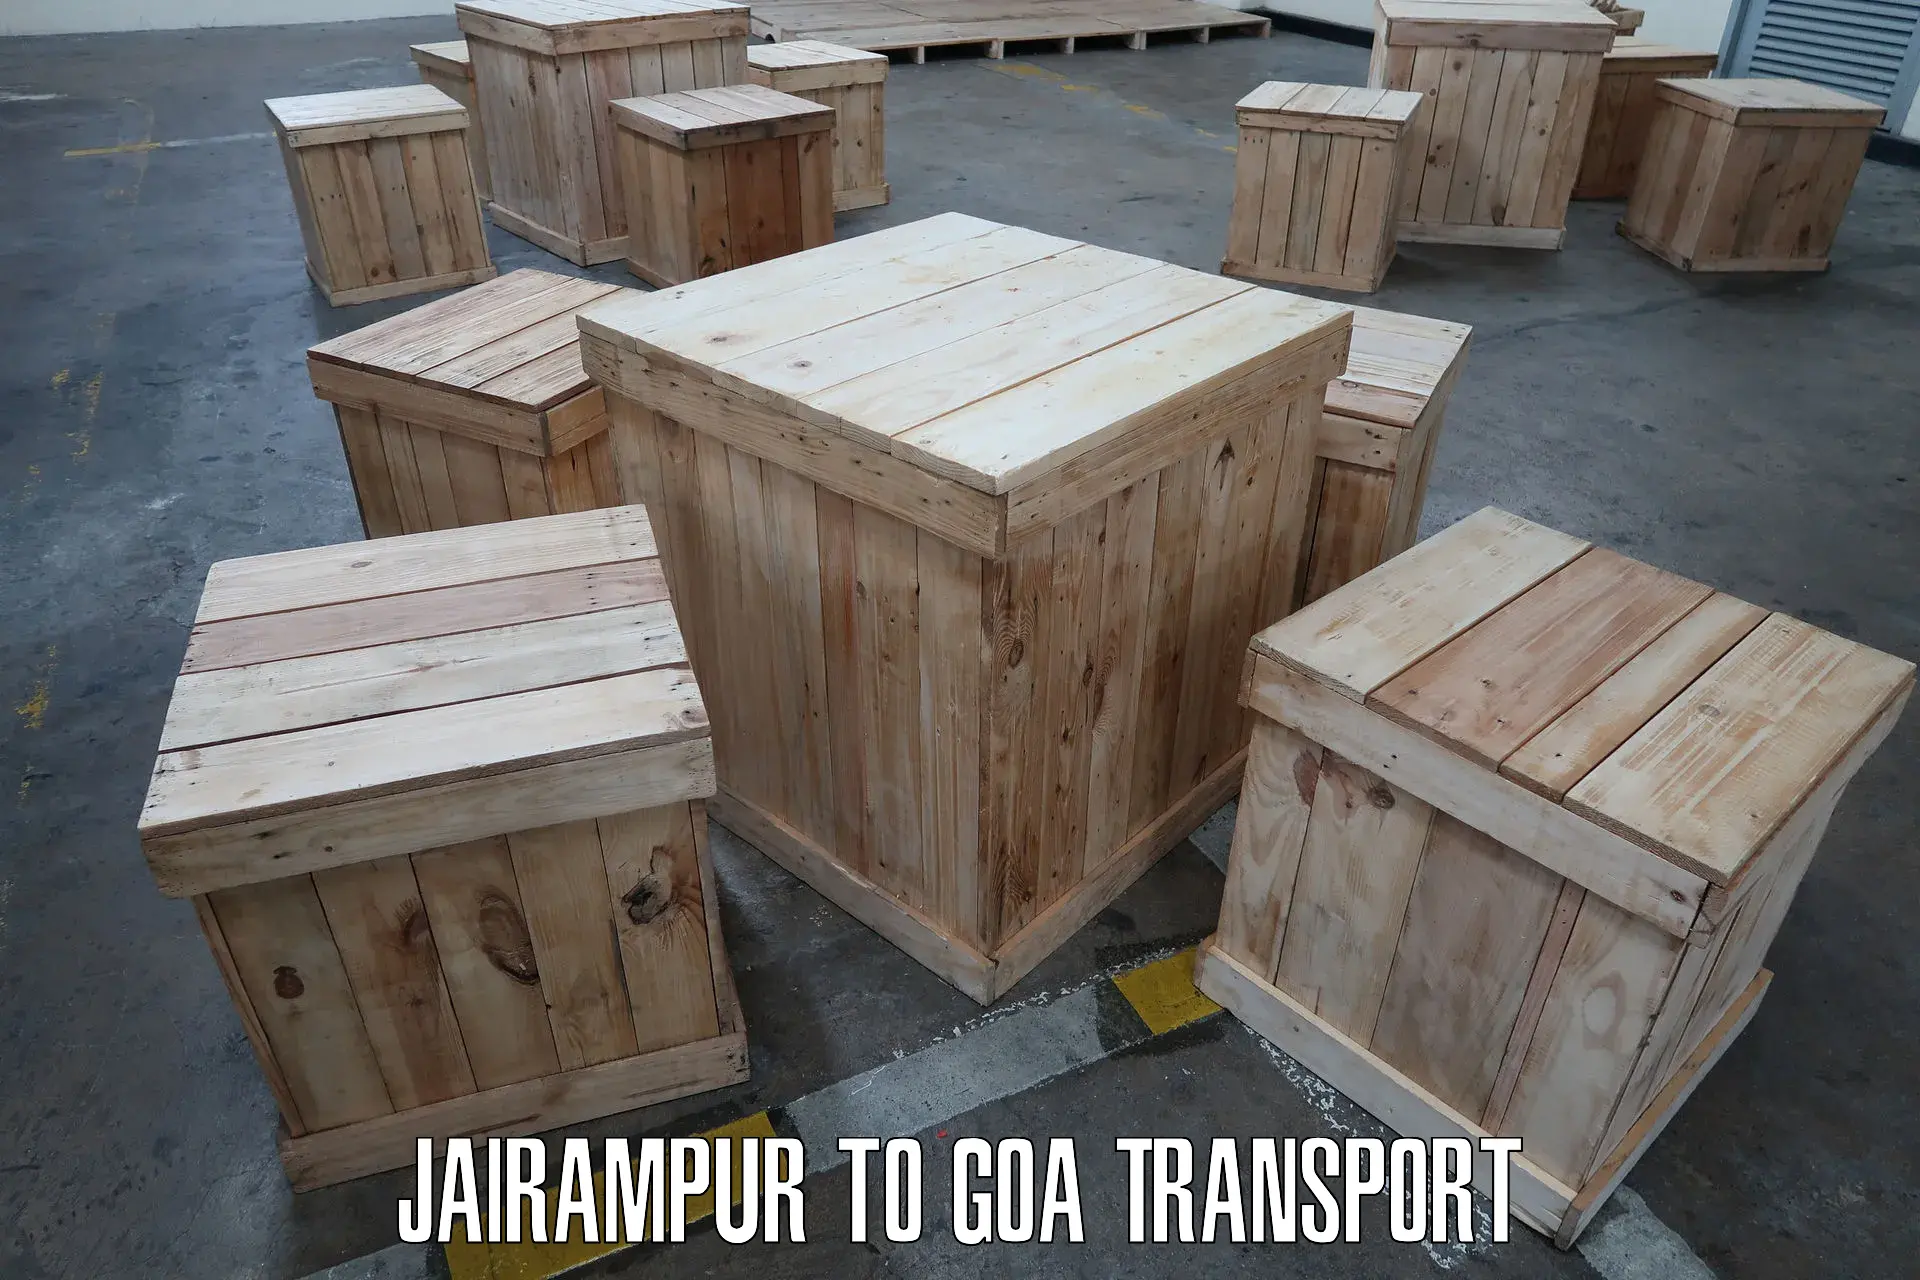 Land transport services in Jairampur to Panjim